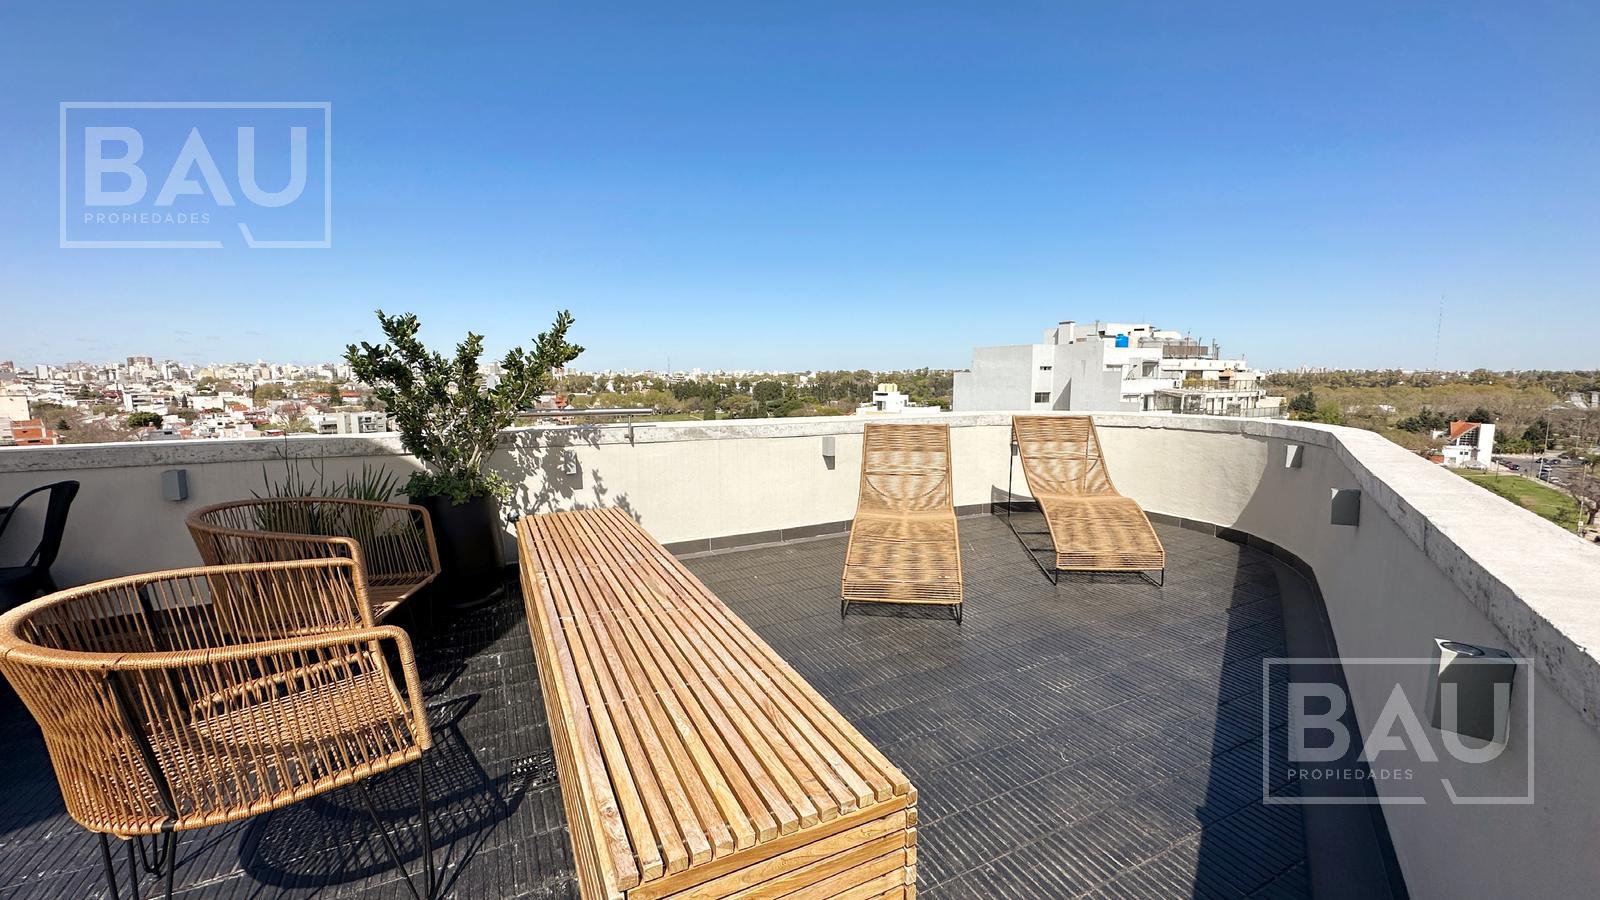 BAU PROPIEDADES: Departamento a estrenar 3 ambientes con balcón terraza! Saavedra!